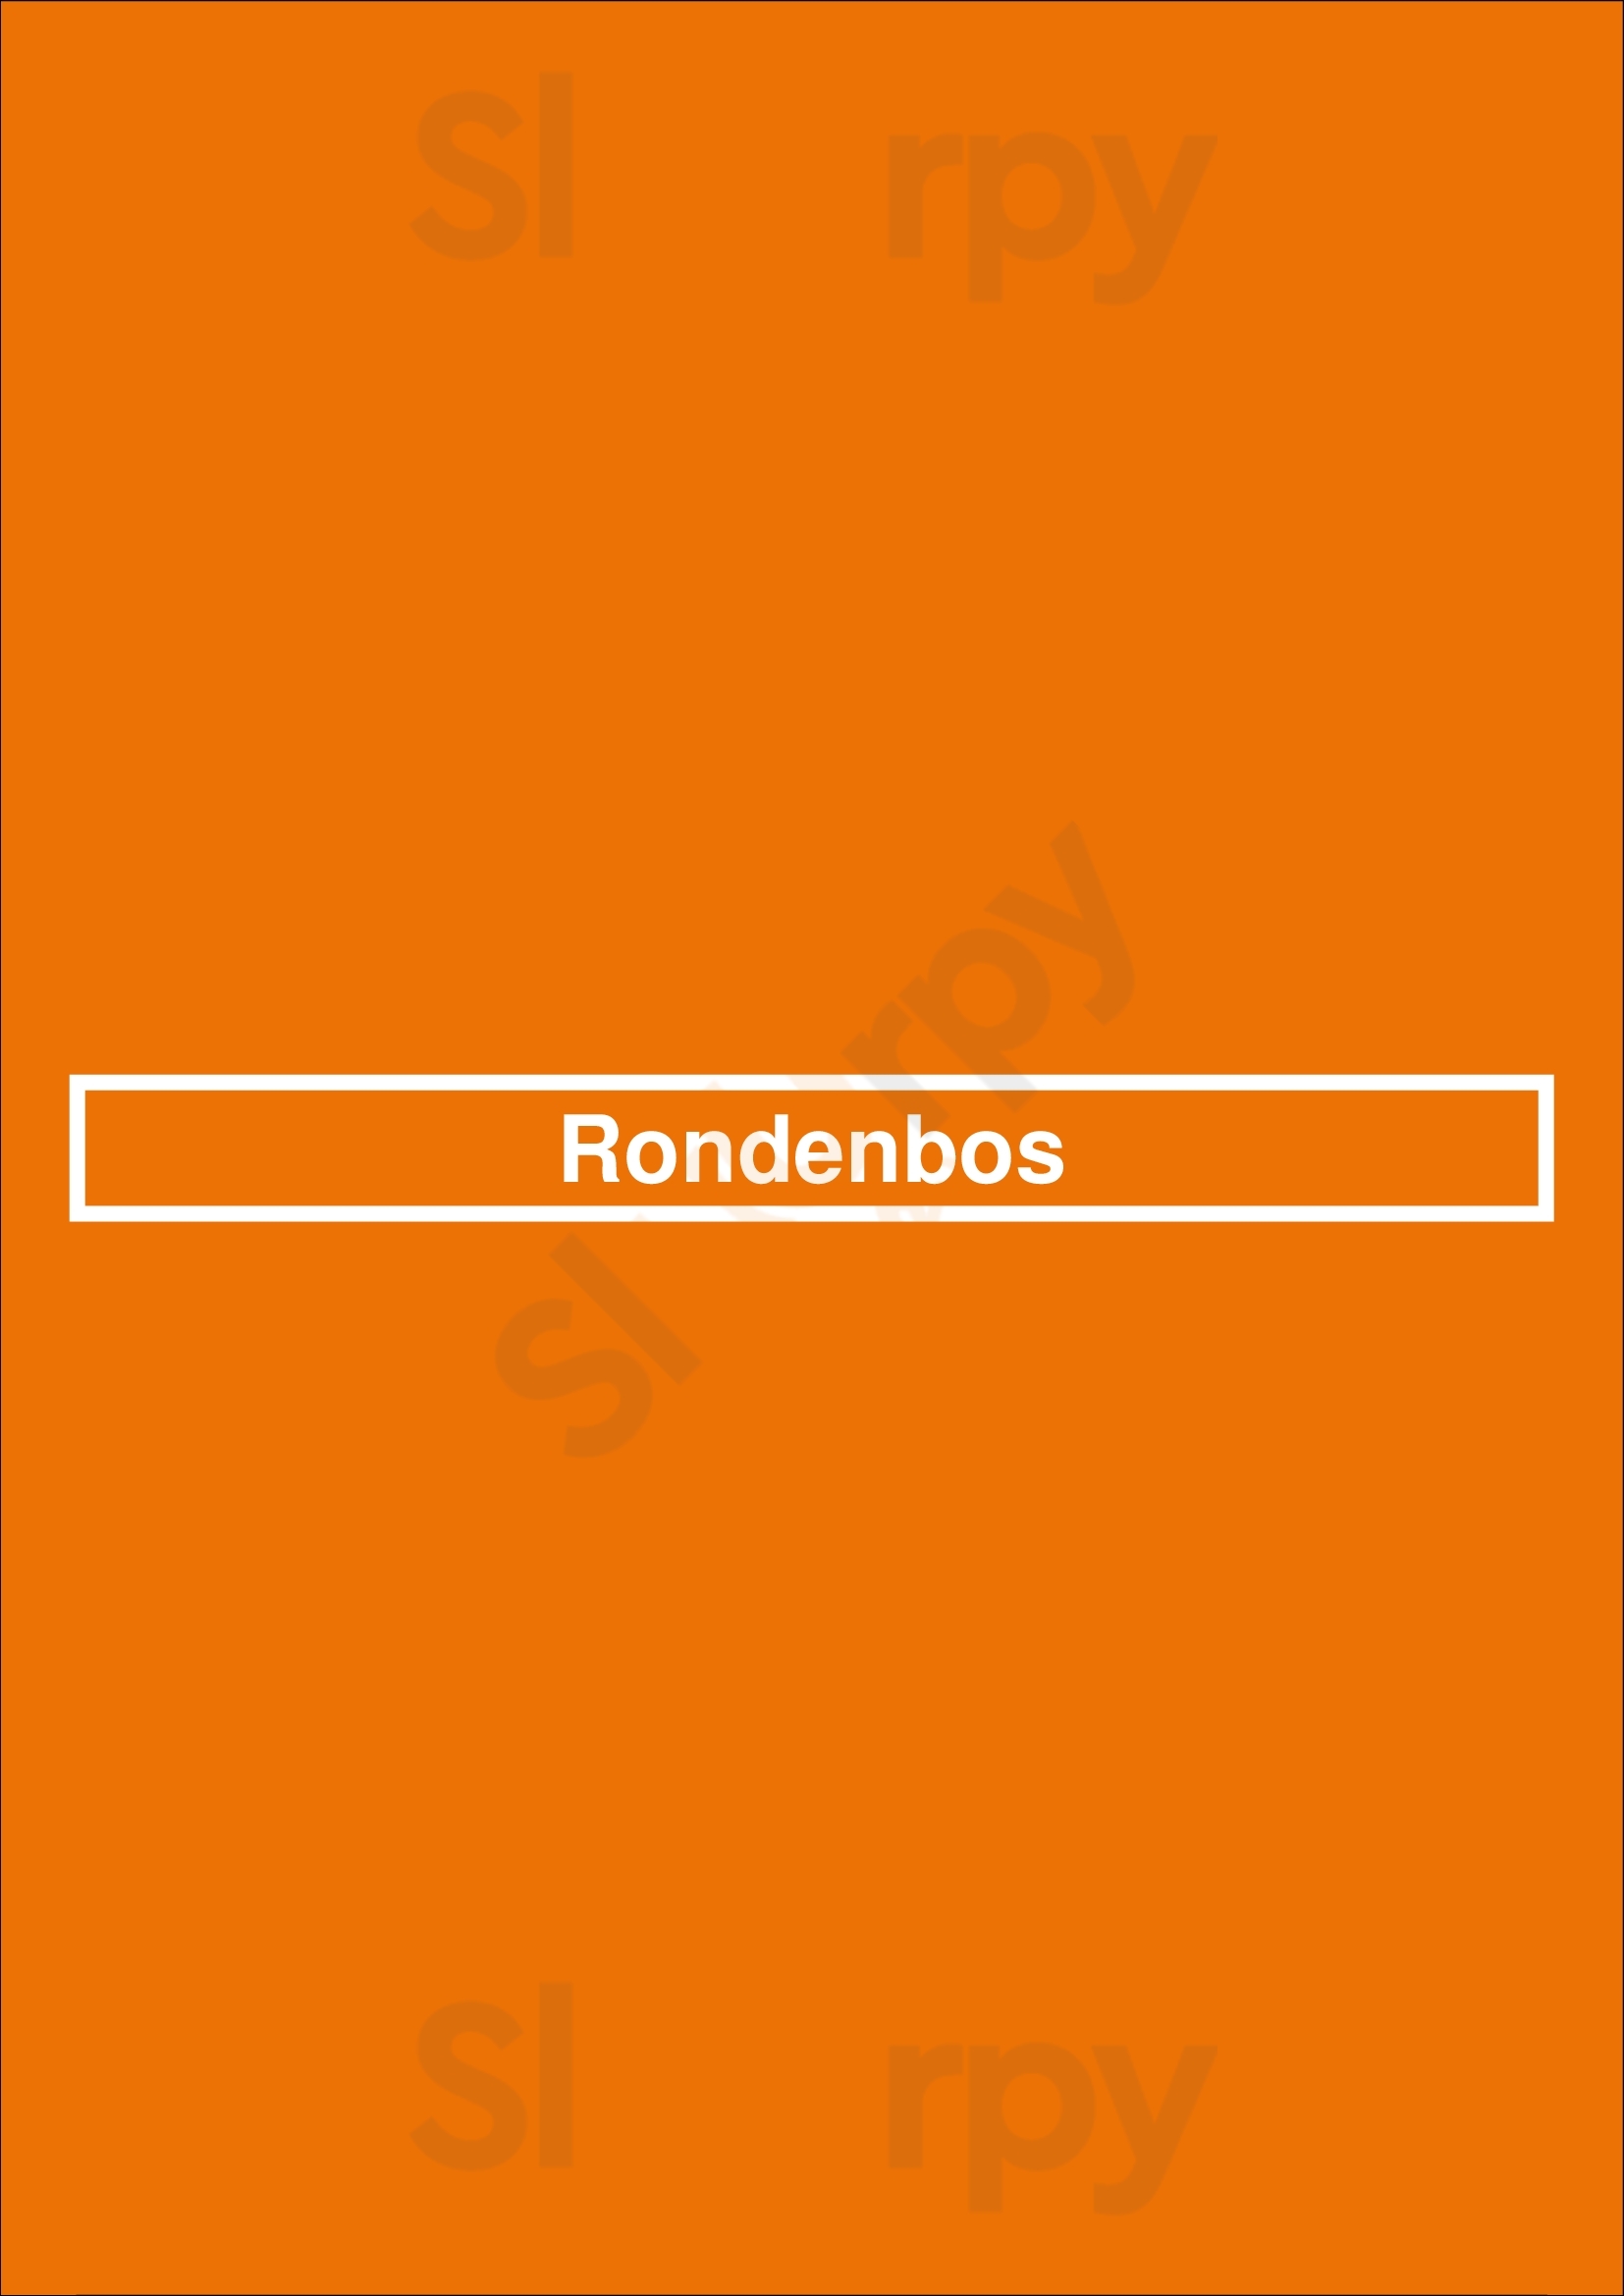 Rondenbos Sint-Martens-Bodegem Menu - 1